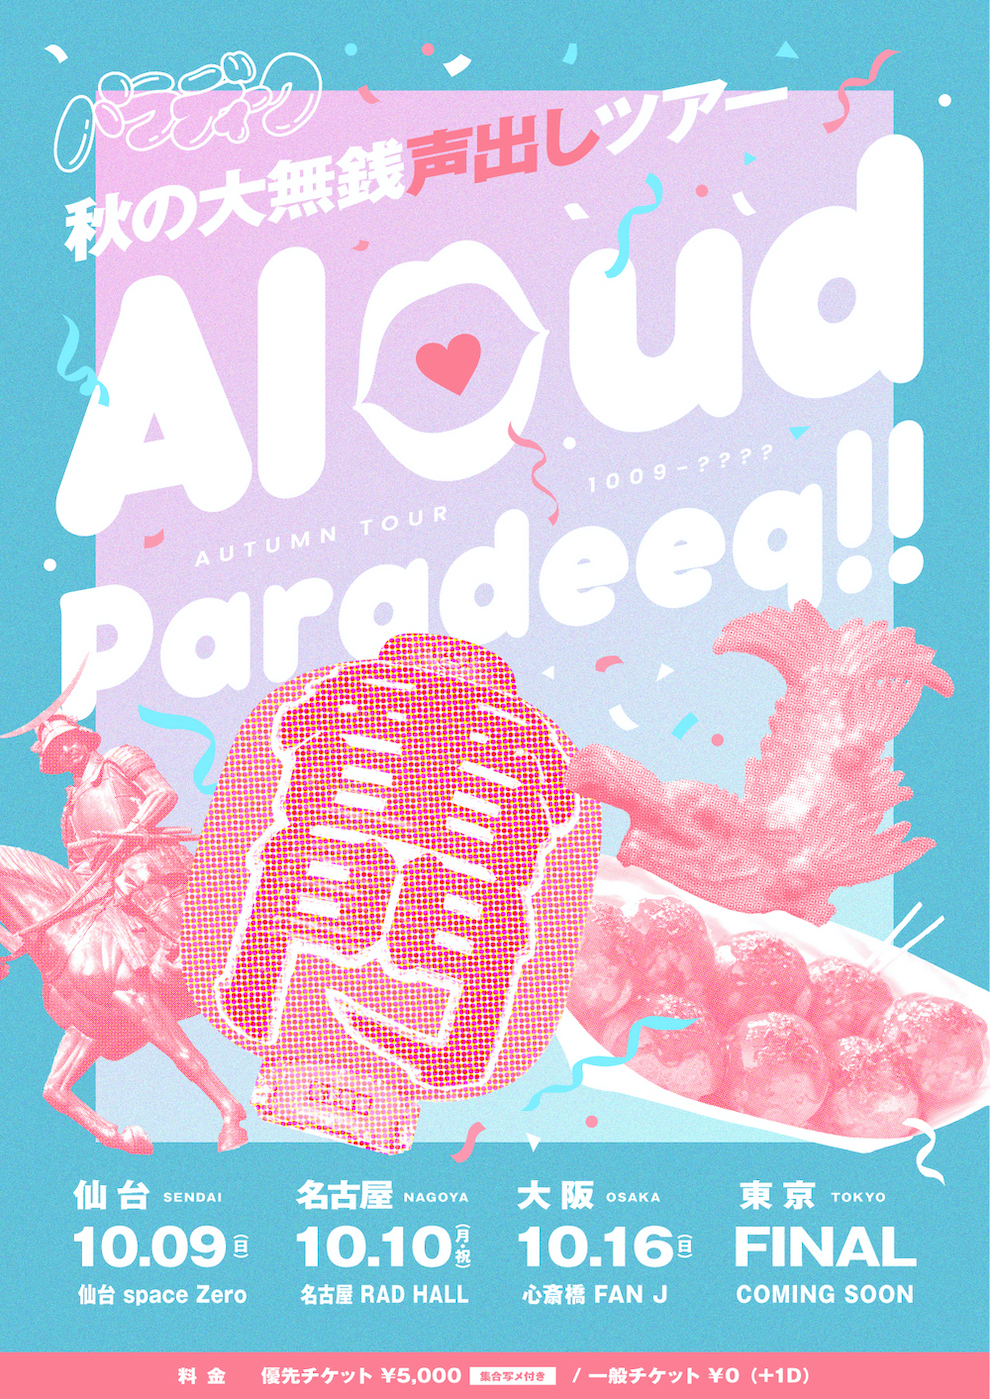 秋の大無銭声出しツアー ~Aloud Paradeeq !!~ -大阪-